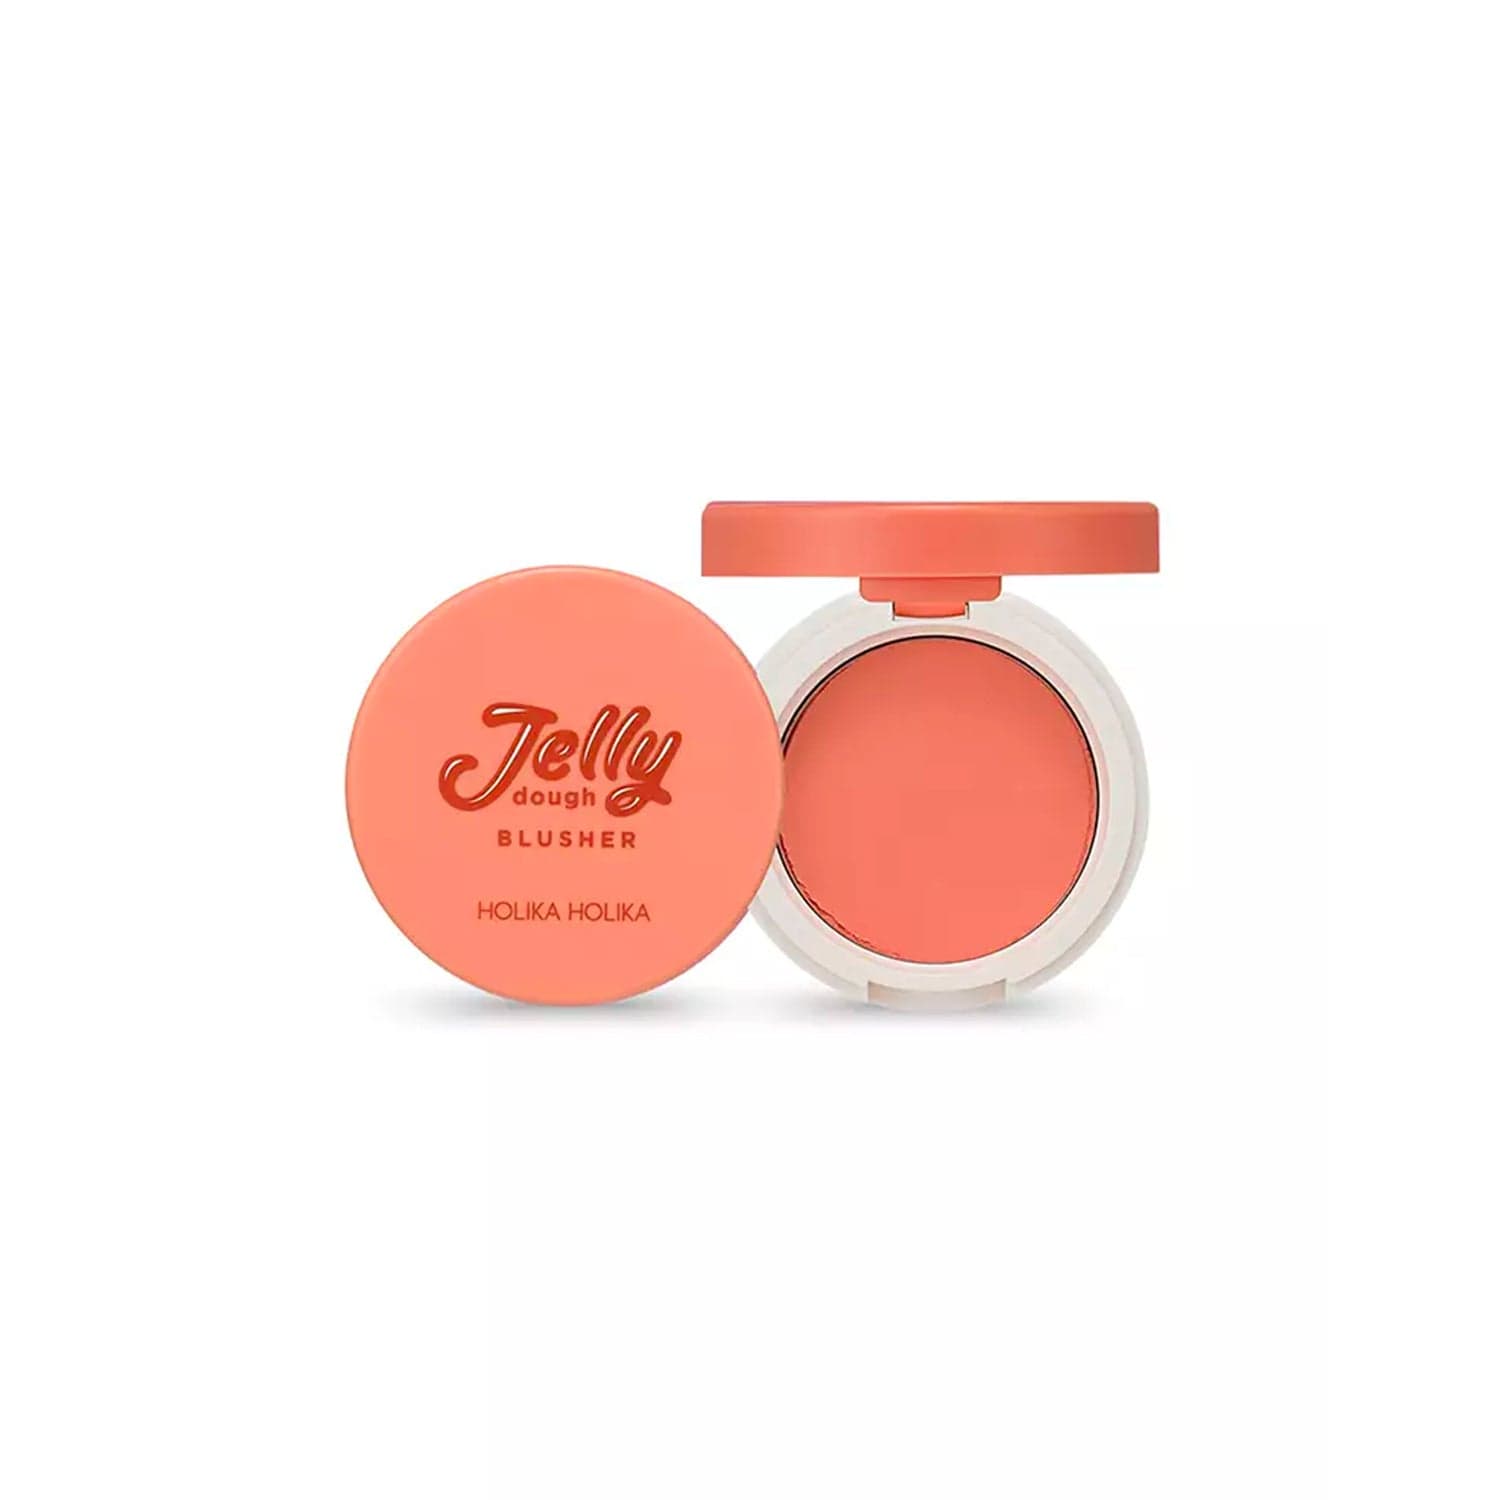 Holika Holika - Blush "Jelly dough Blusher" - Holika Holika - Ethni Beauty Market